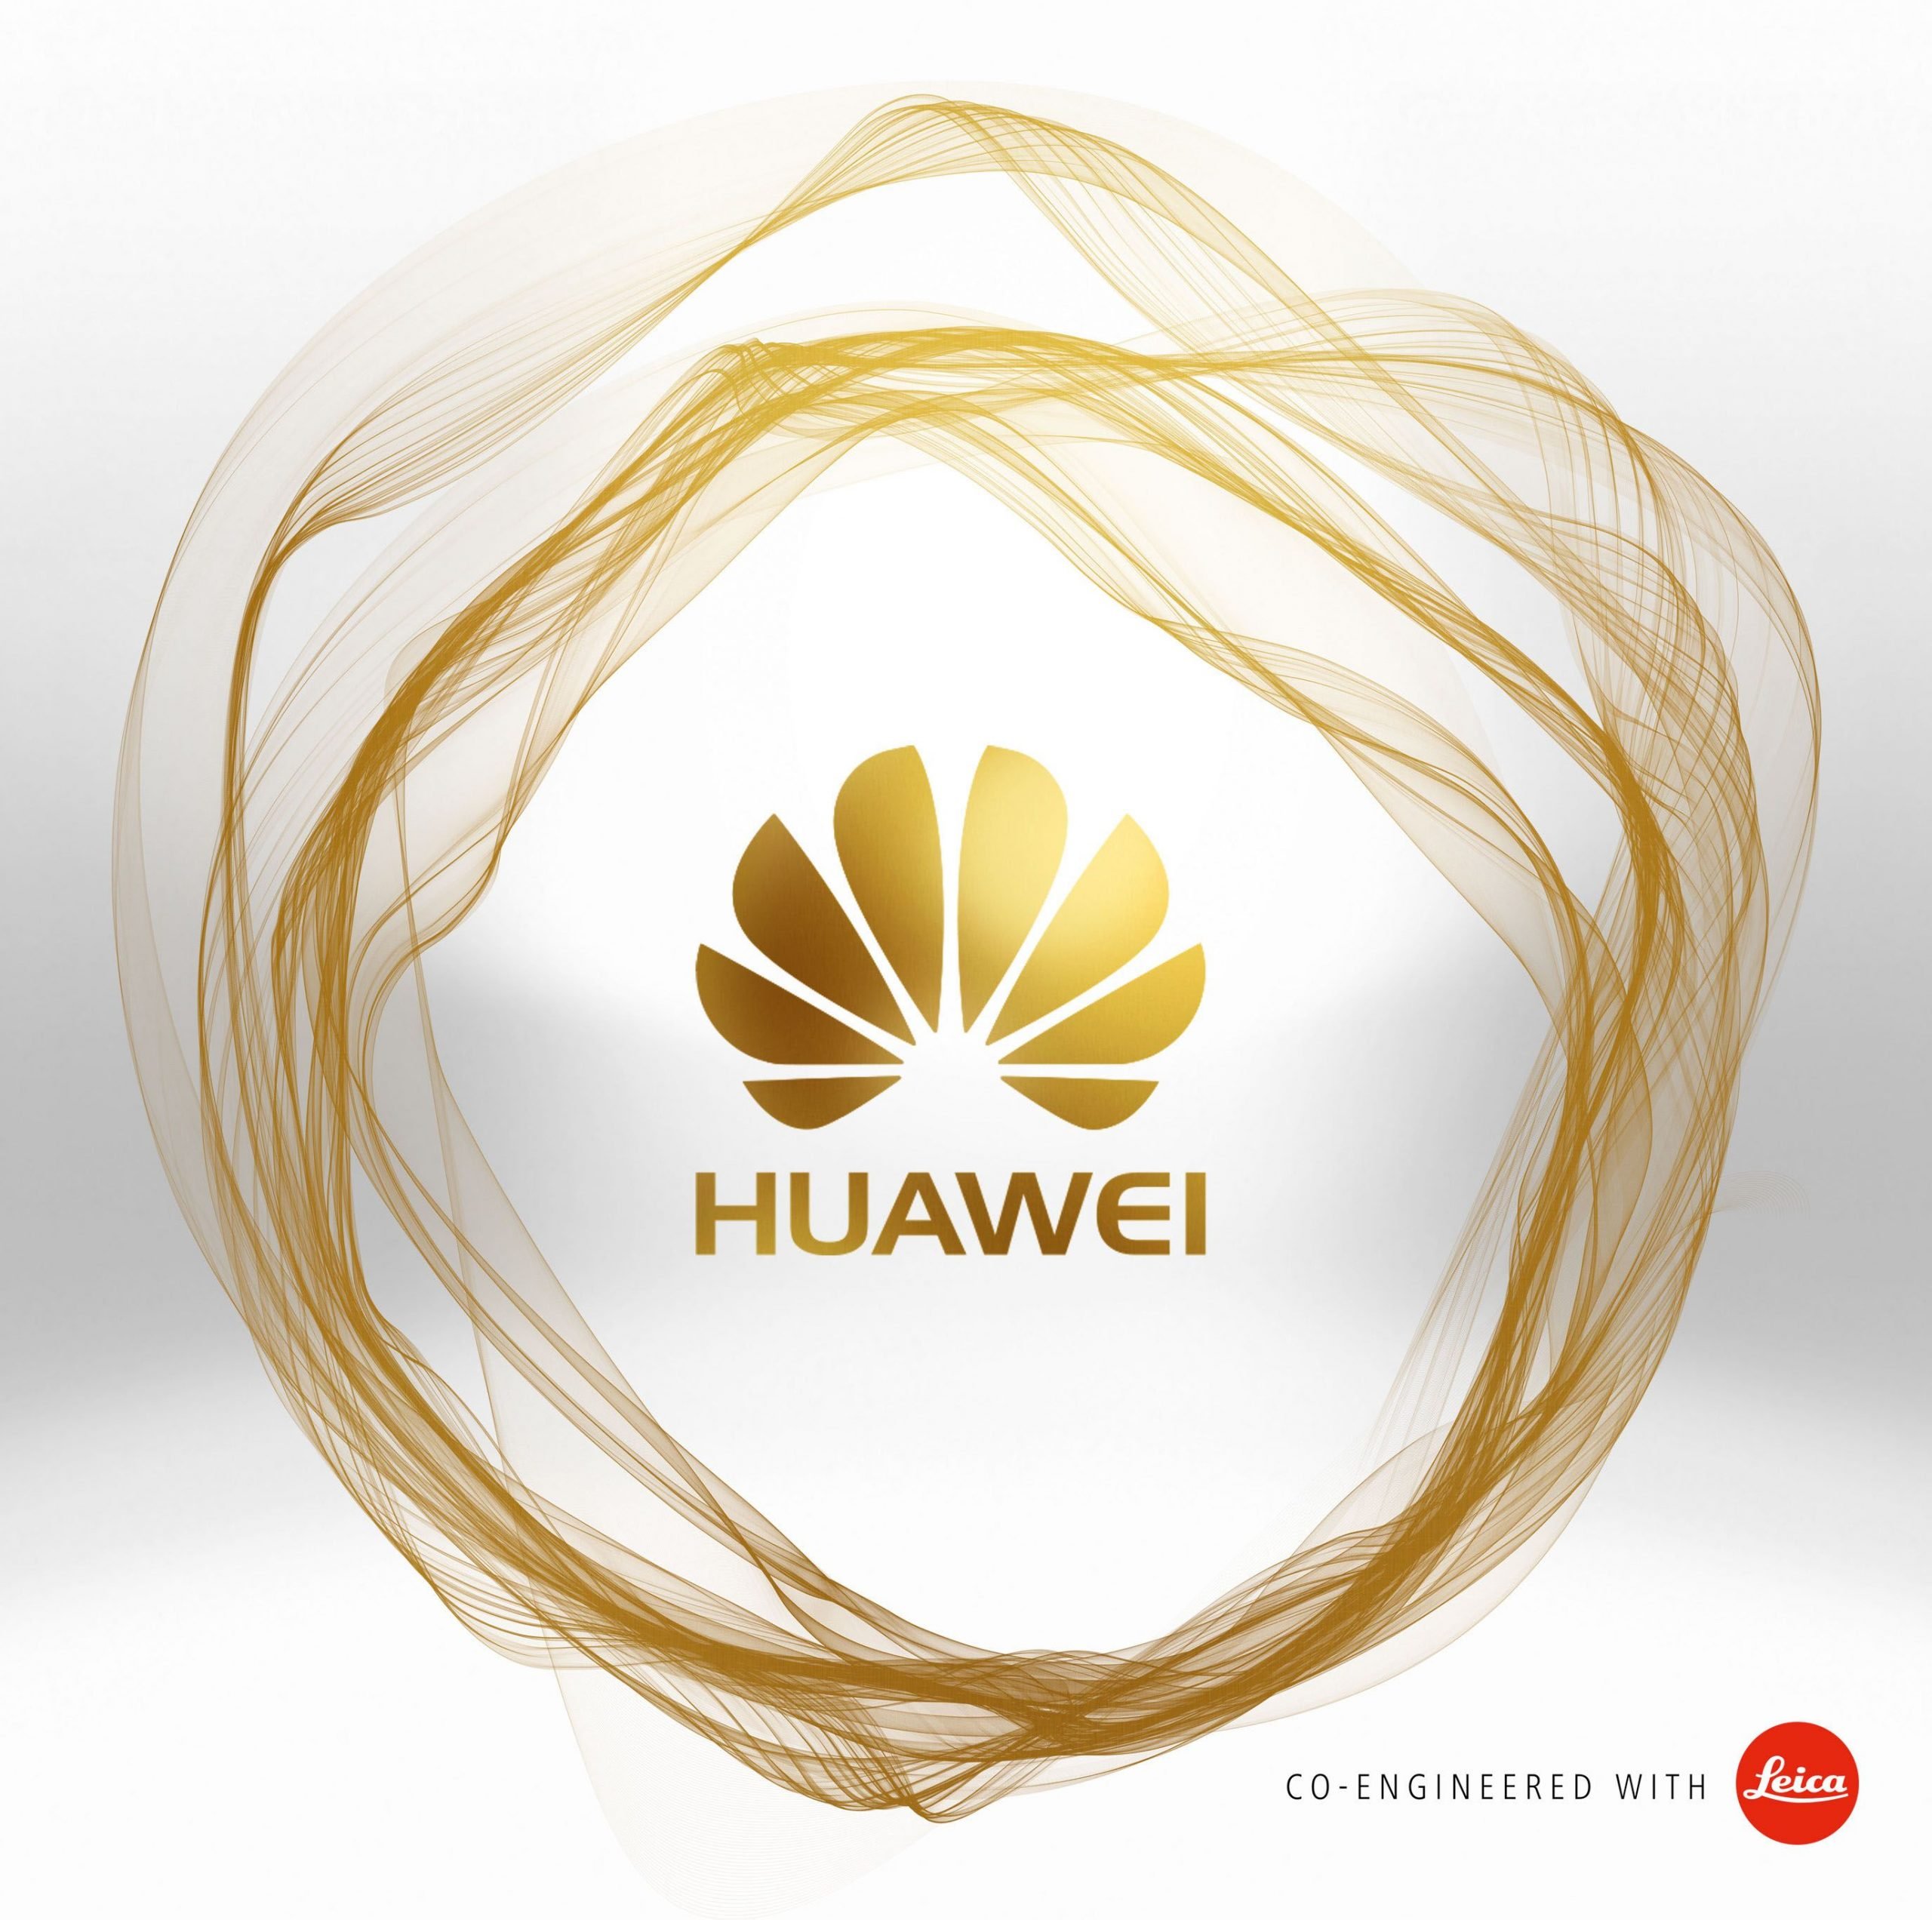 Huawei-China Retaliation Draws Up List